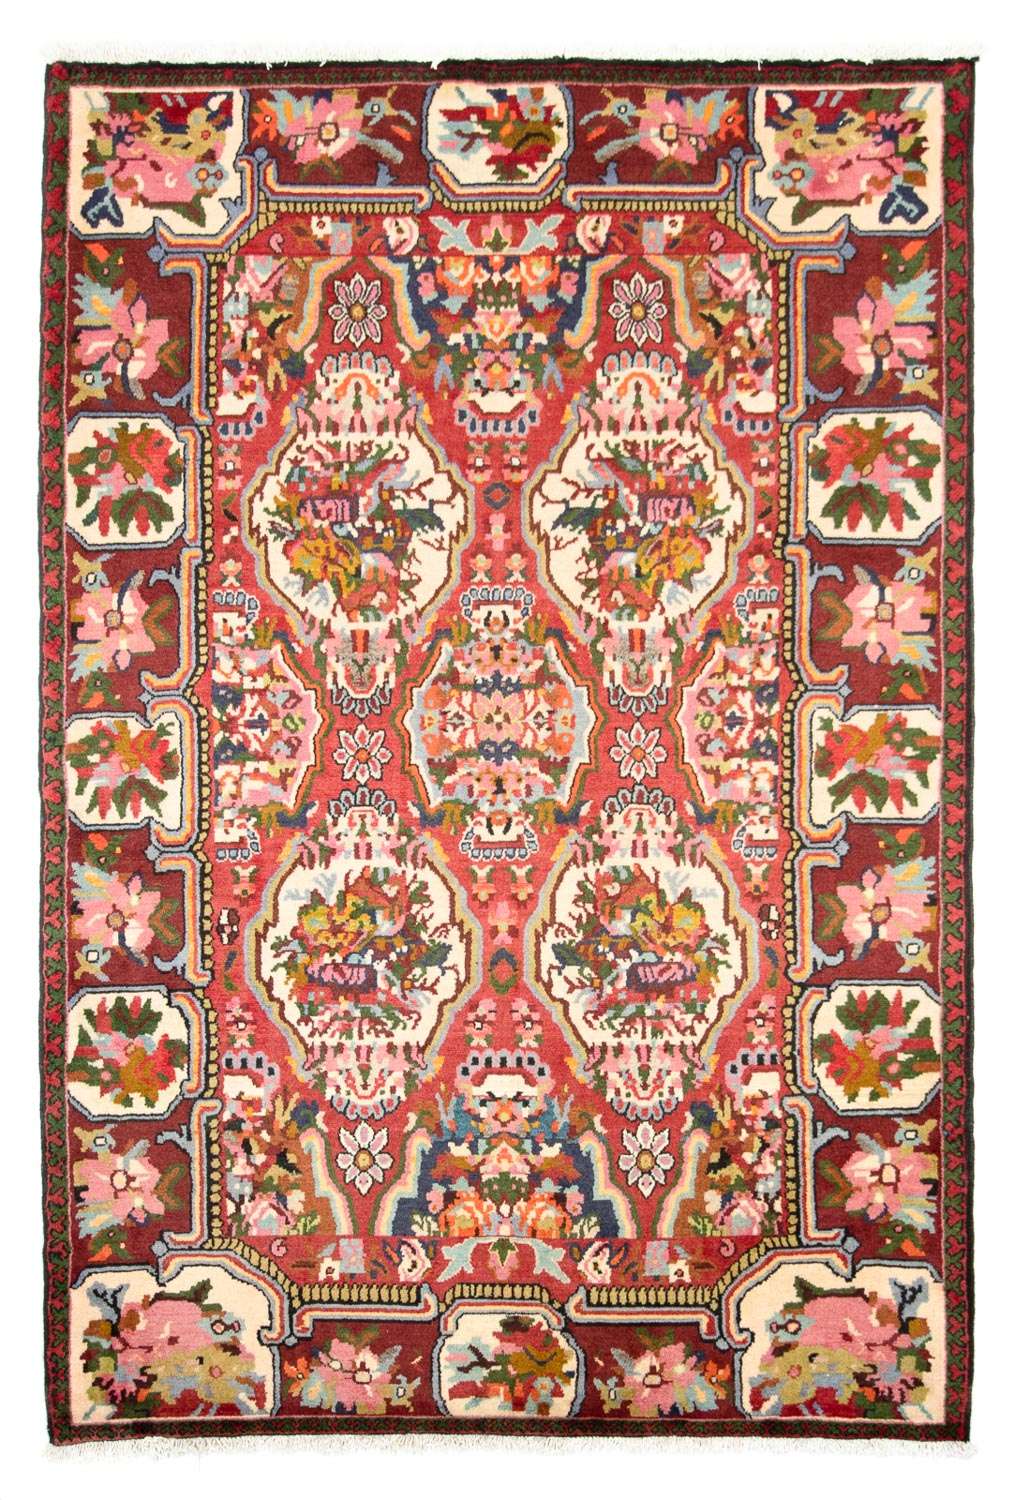 Alfombra persa - Nómada - 197 x 136 cm - rojo oscuro